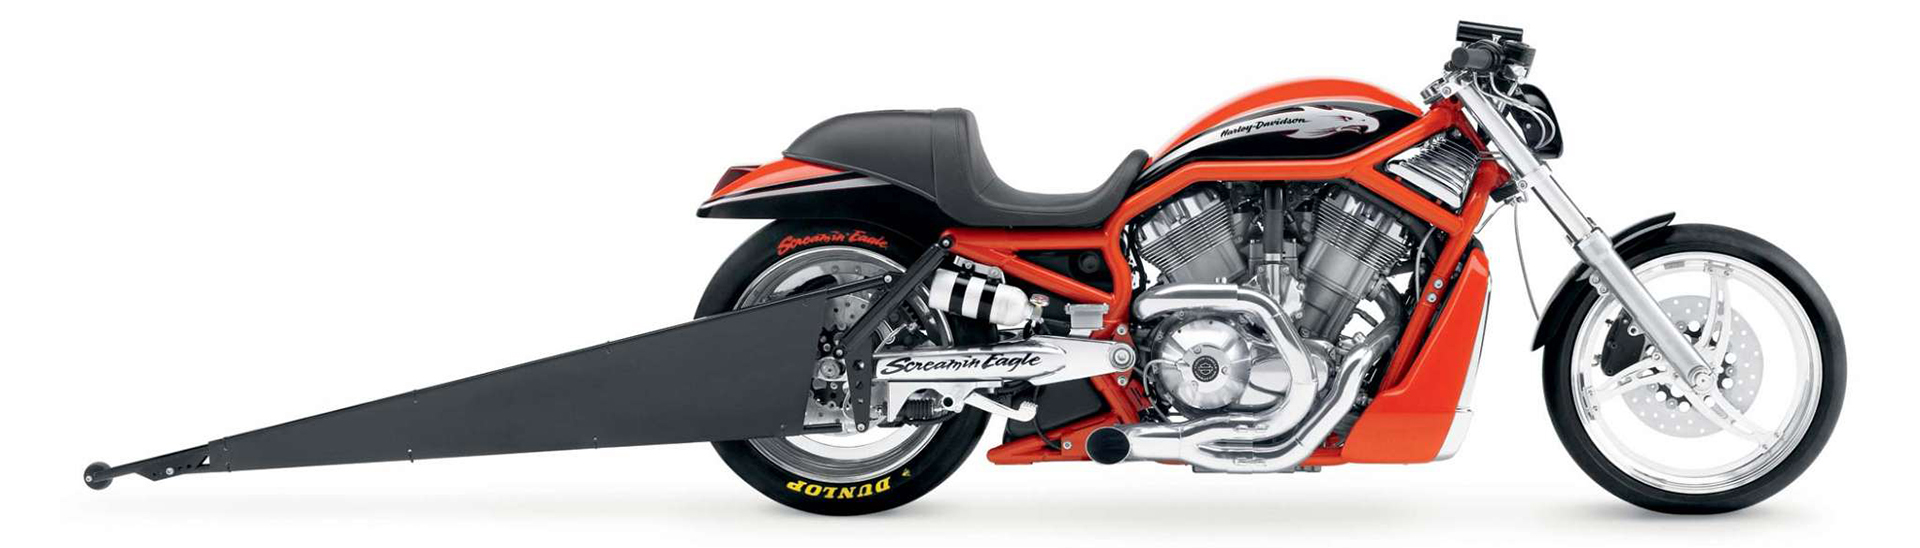 Những mẫu mô tô Harley Davidson 'tuyệt vời nhất' mọi thời đại 22